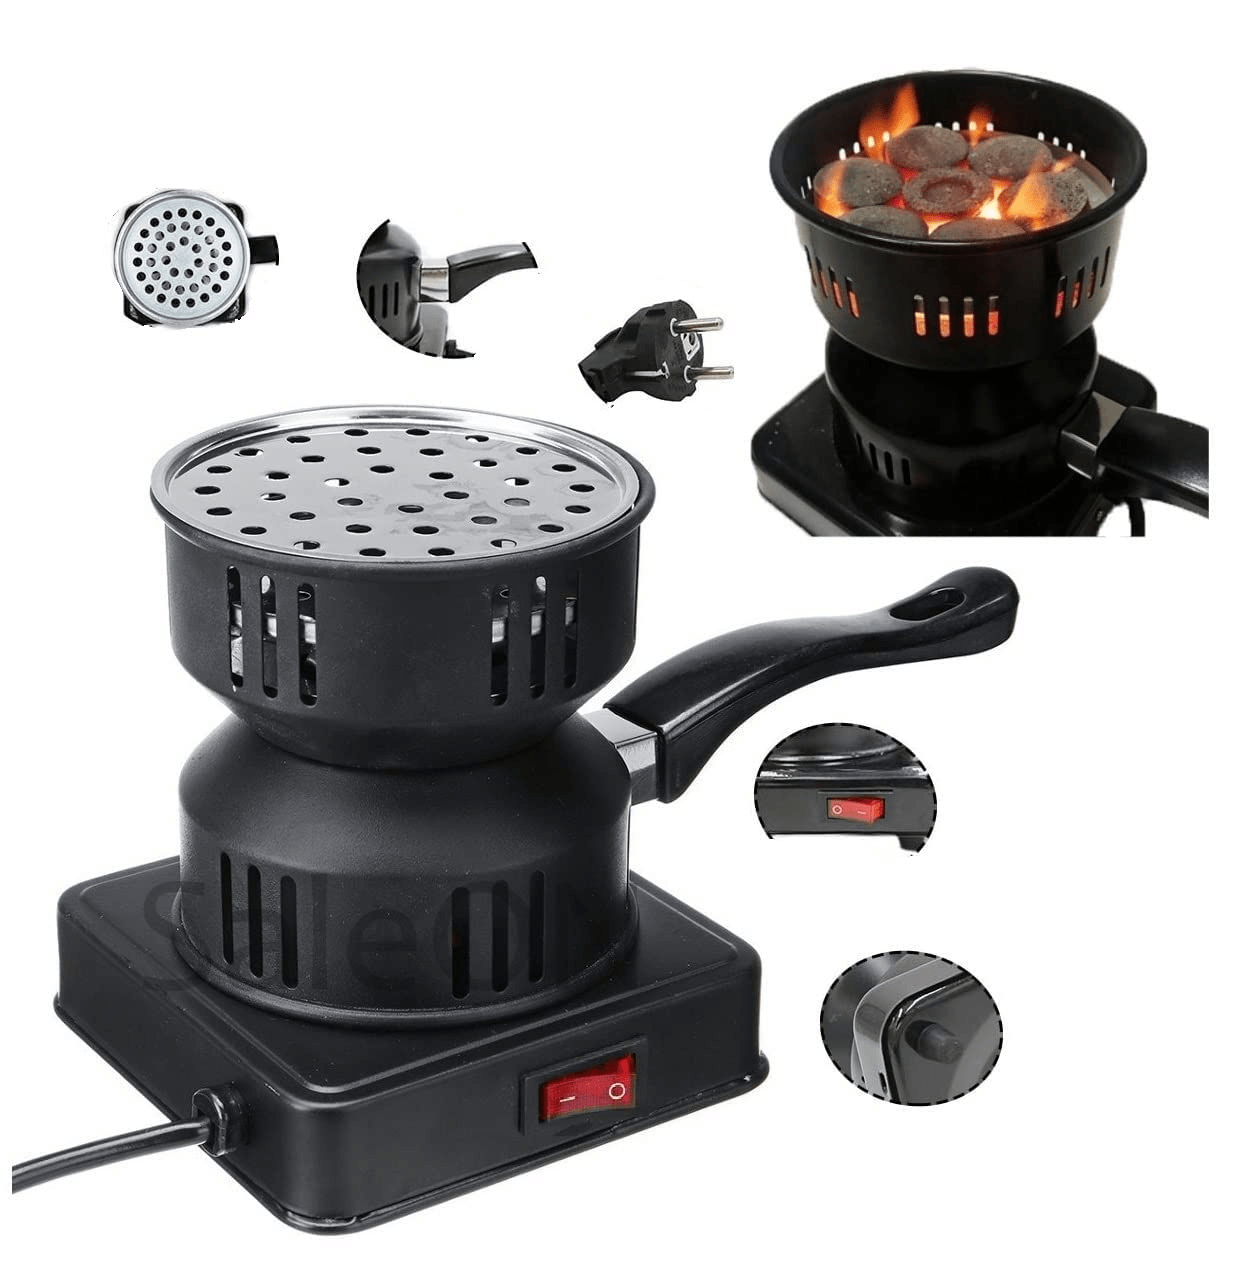 Réchaud électrique en acier inoxydable rapide 500 W avec poignée amovible Grille intelligent de la chaleur cuisine barbecue 5M